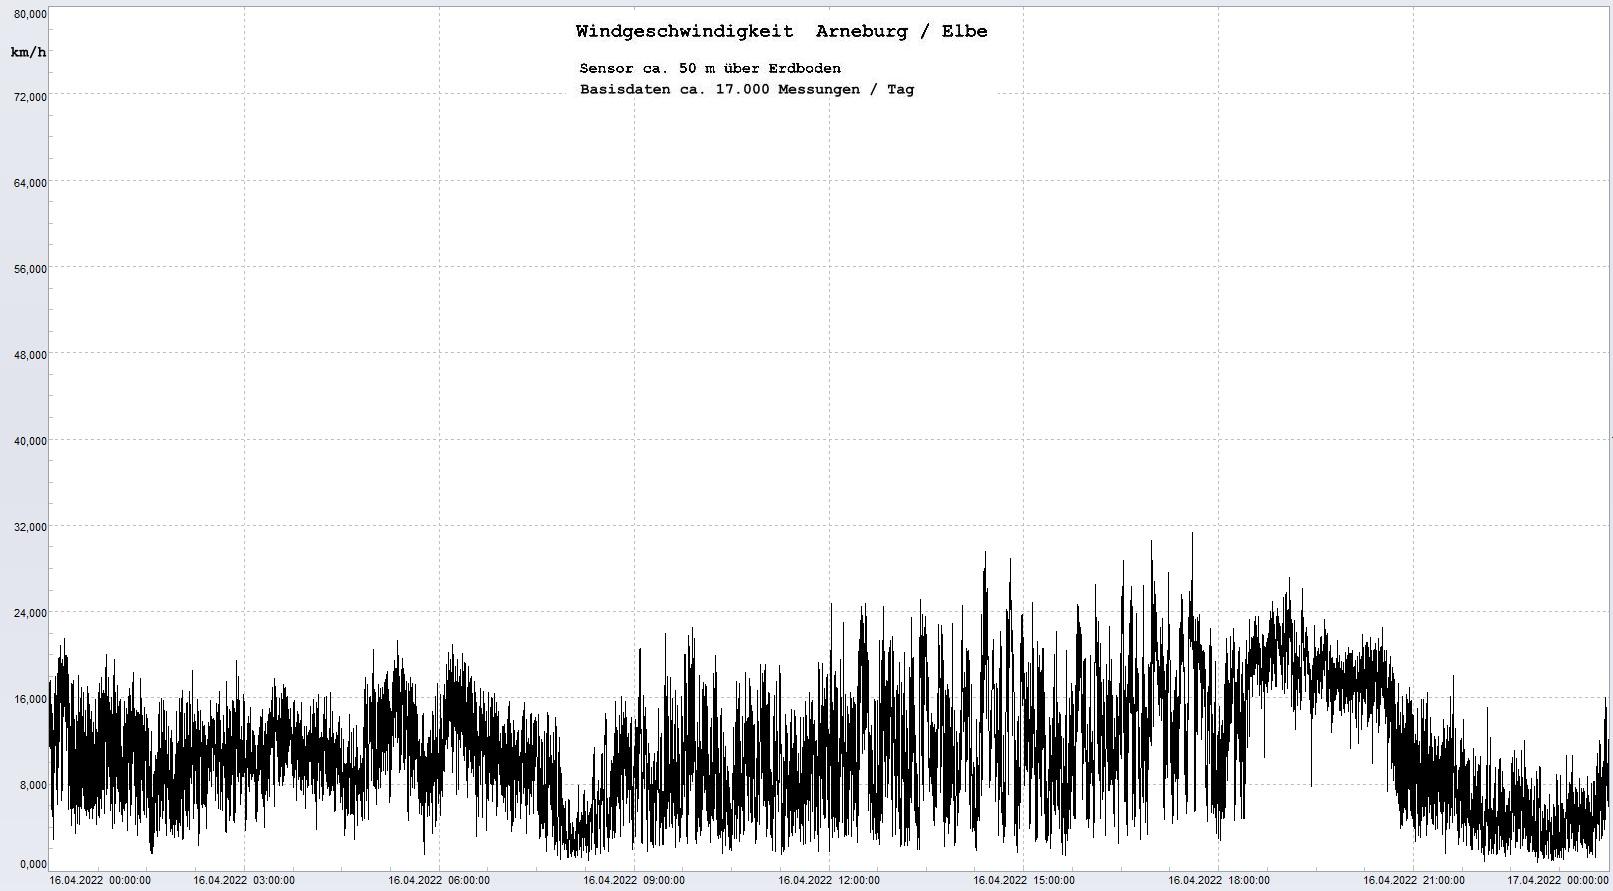 Arneburg Tages-Diagramm Winddaten, 16.04.2023
  Diaramm, Sensor auf Gebäude, ca. 50 m über Erdboden, Basis: 5s-Aufzeichnung